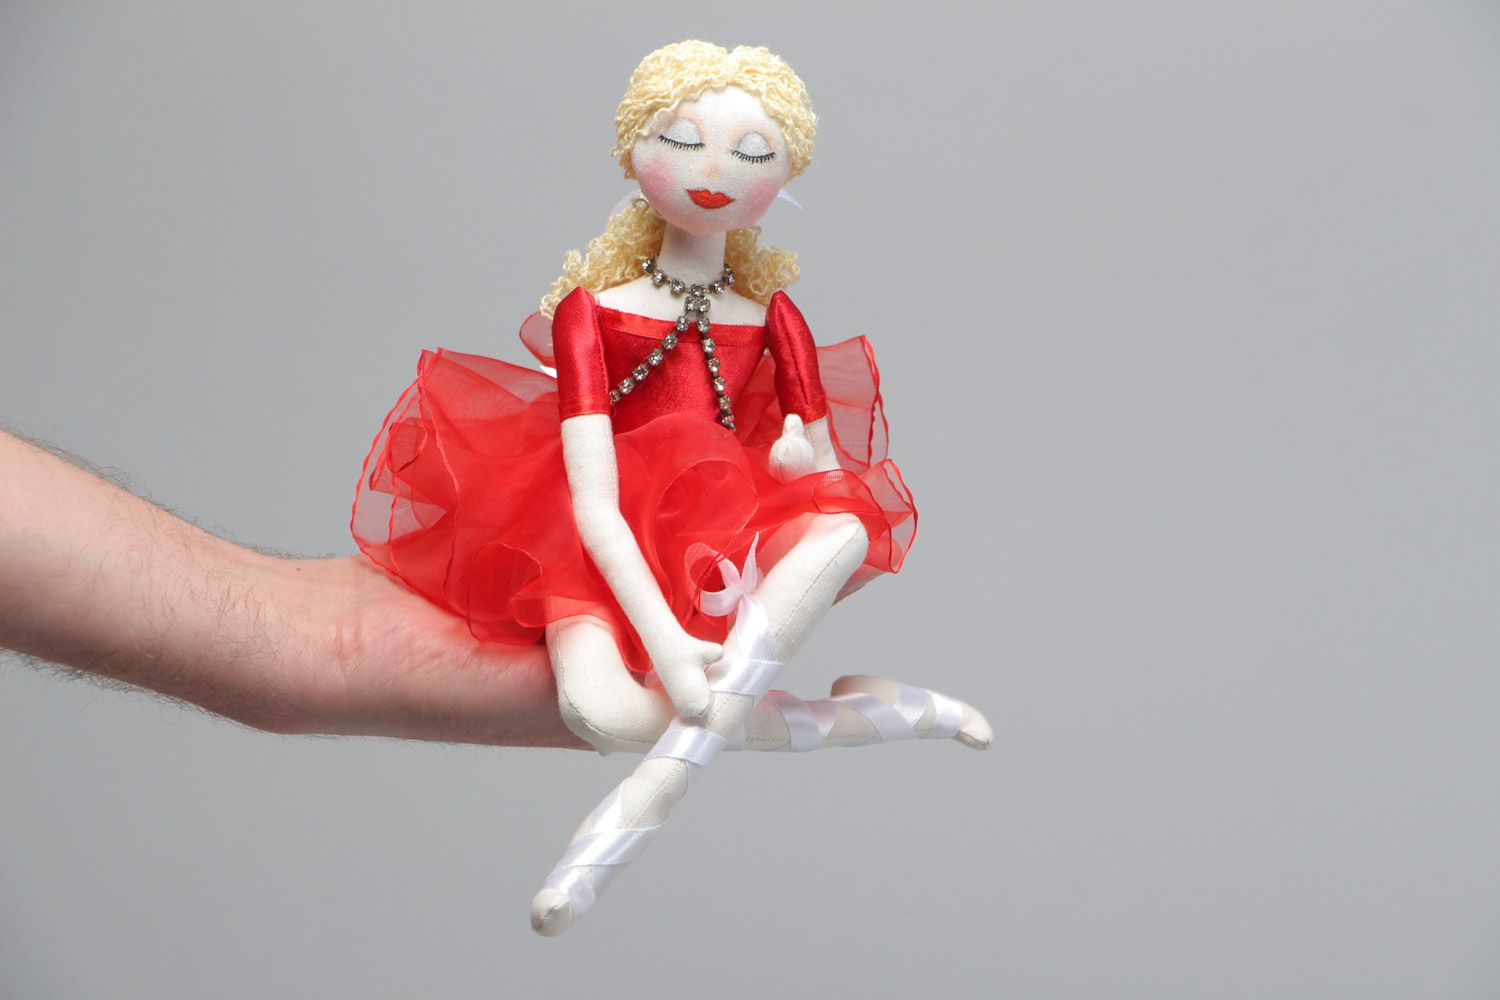 Мягкая игрушка в виде балерины ручной работы из хлопка и льна для девочки фото 5